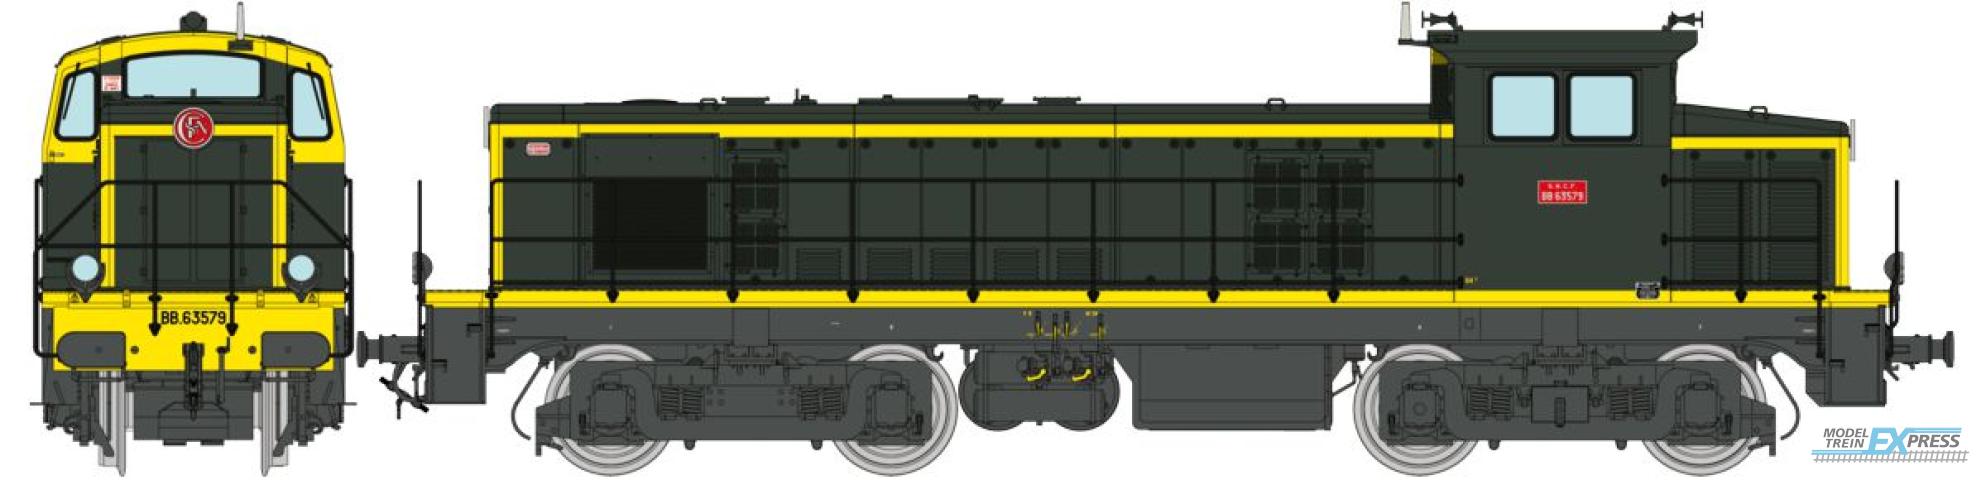 REE models JM-009 Diesel Locomotive BB 63579 green/yellow 401 grey frame, Era IV - ANALOG